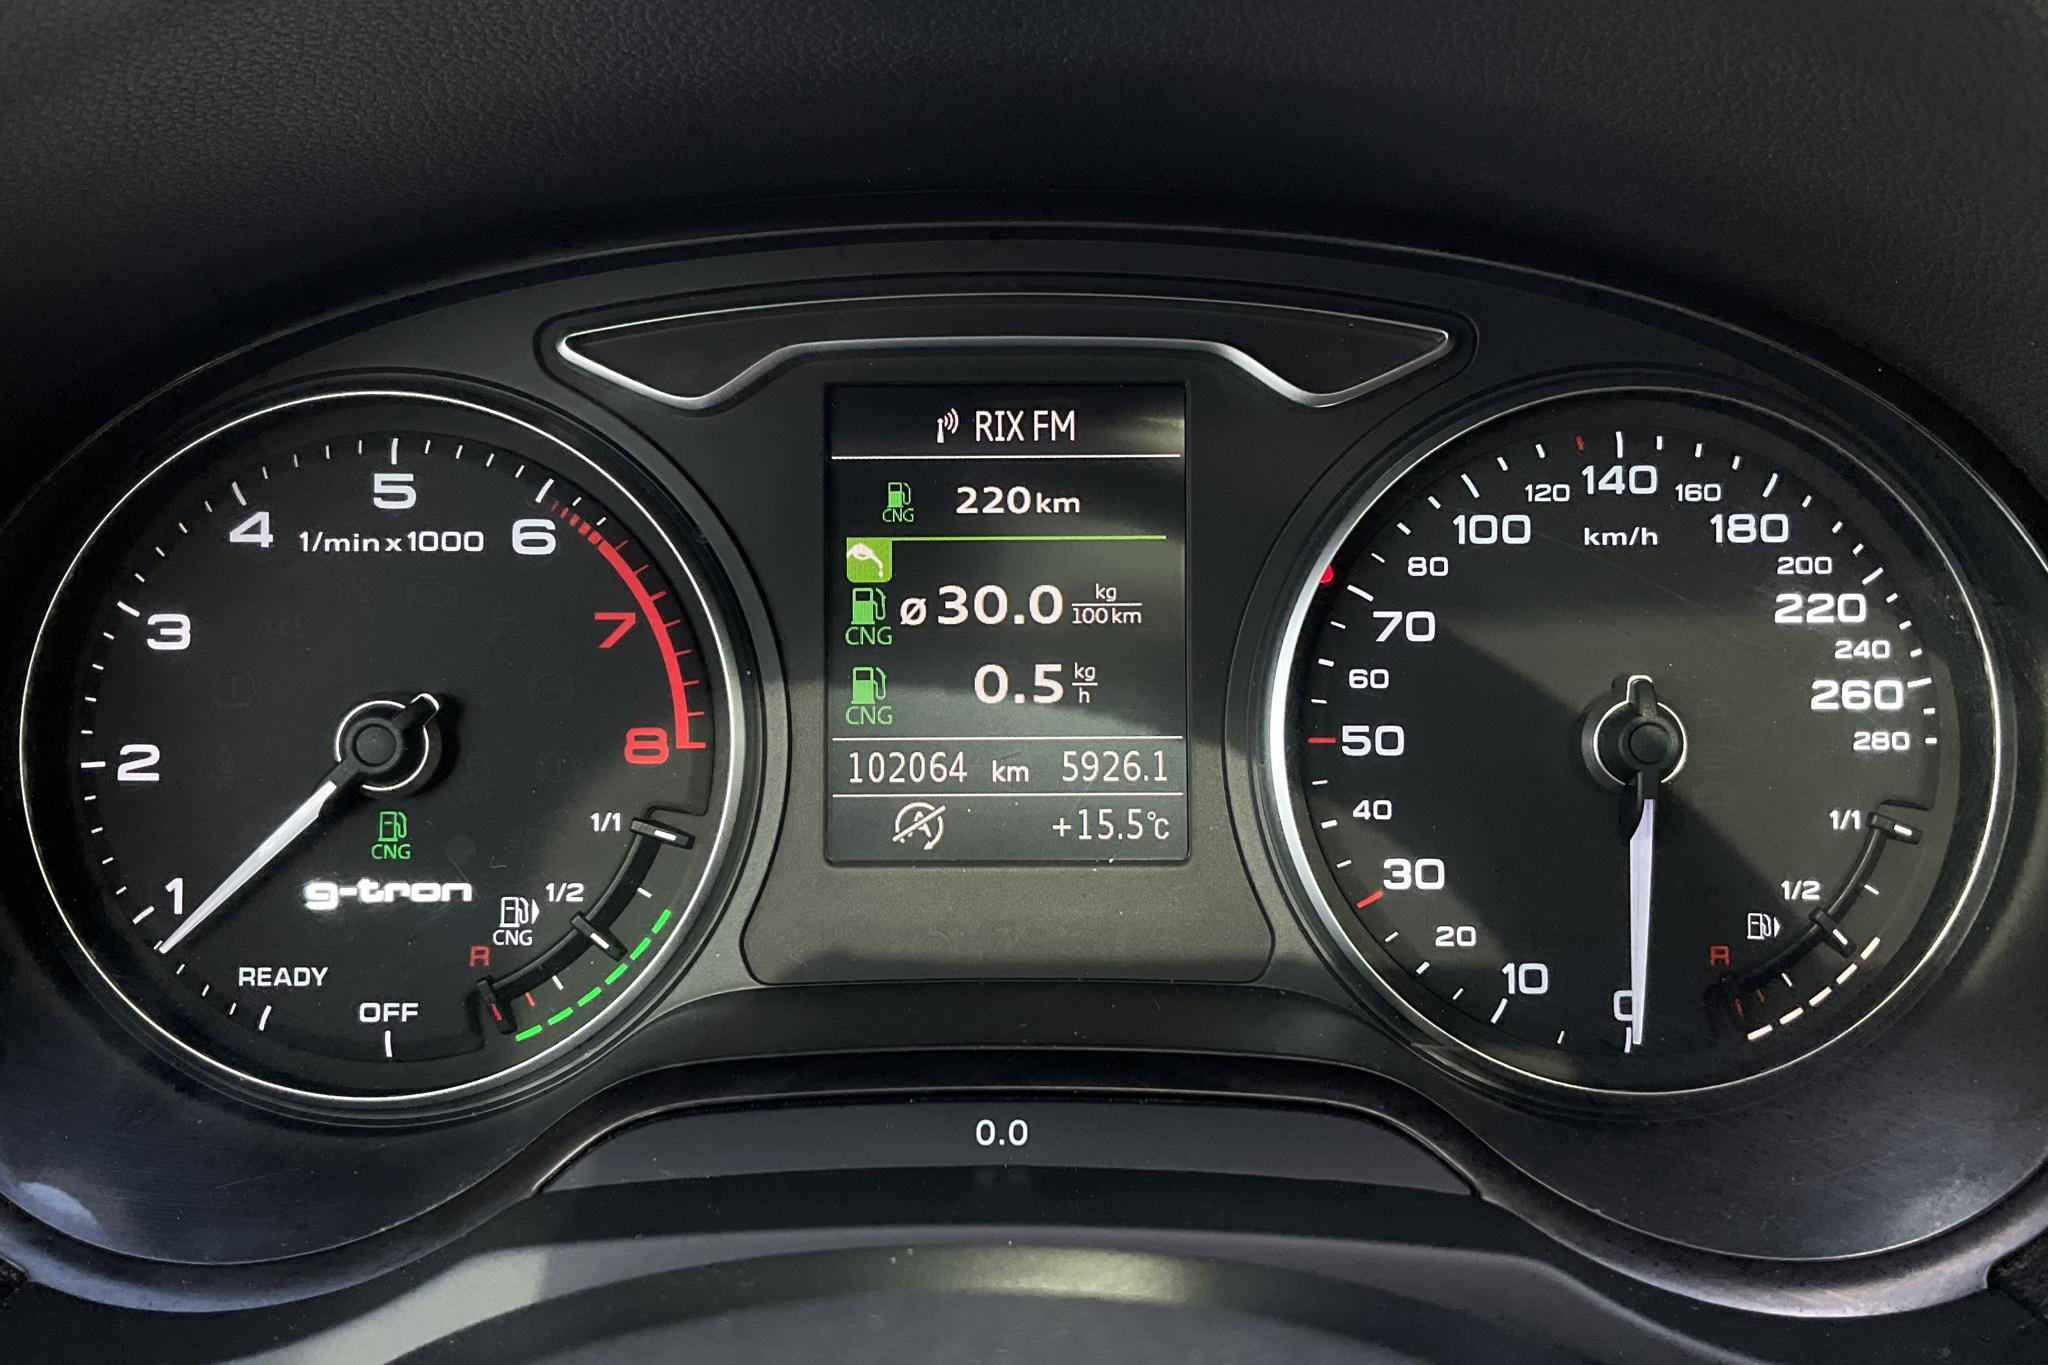 Audi A3 1.4 TFSI g-tron Sportback (110hk) - 102 060 km - Manual - black - 2016